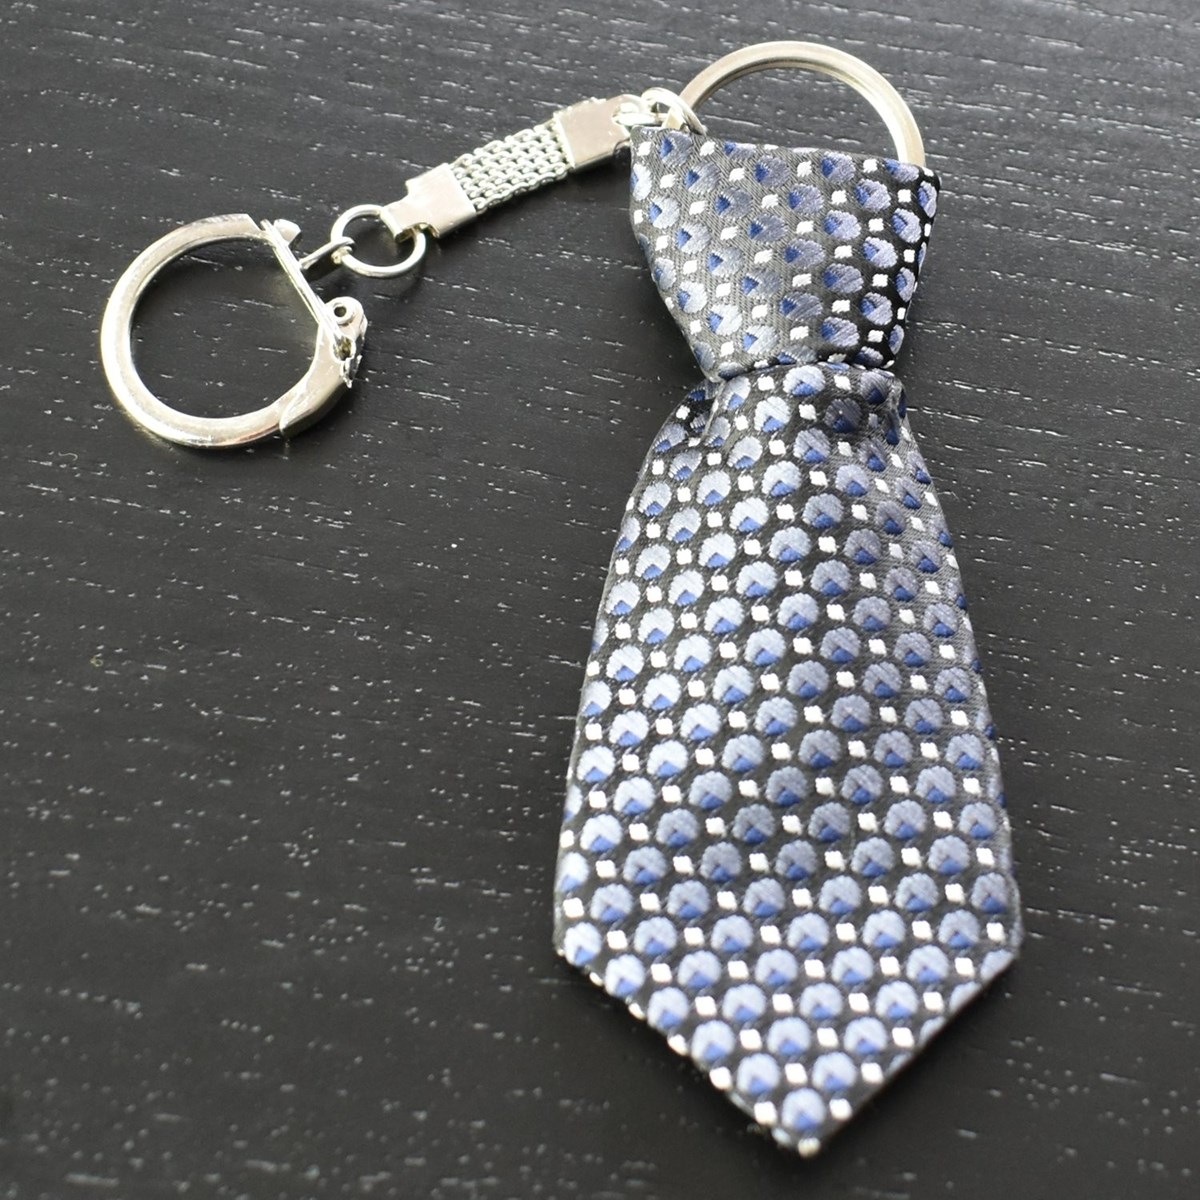 Porte-clés cravate en tissu motif blanc et bleu sur fond noir argenté - vue 3